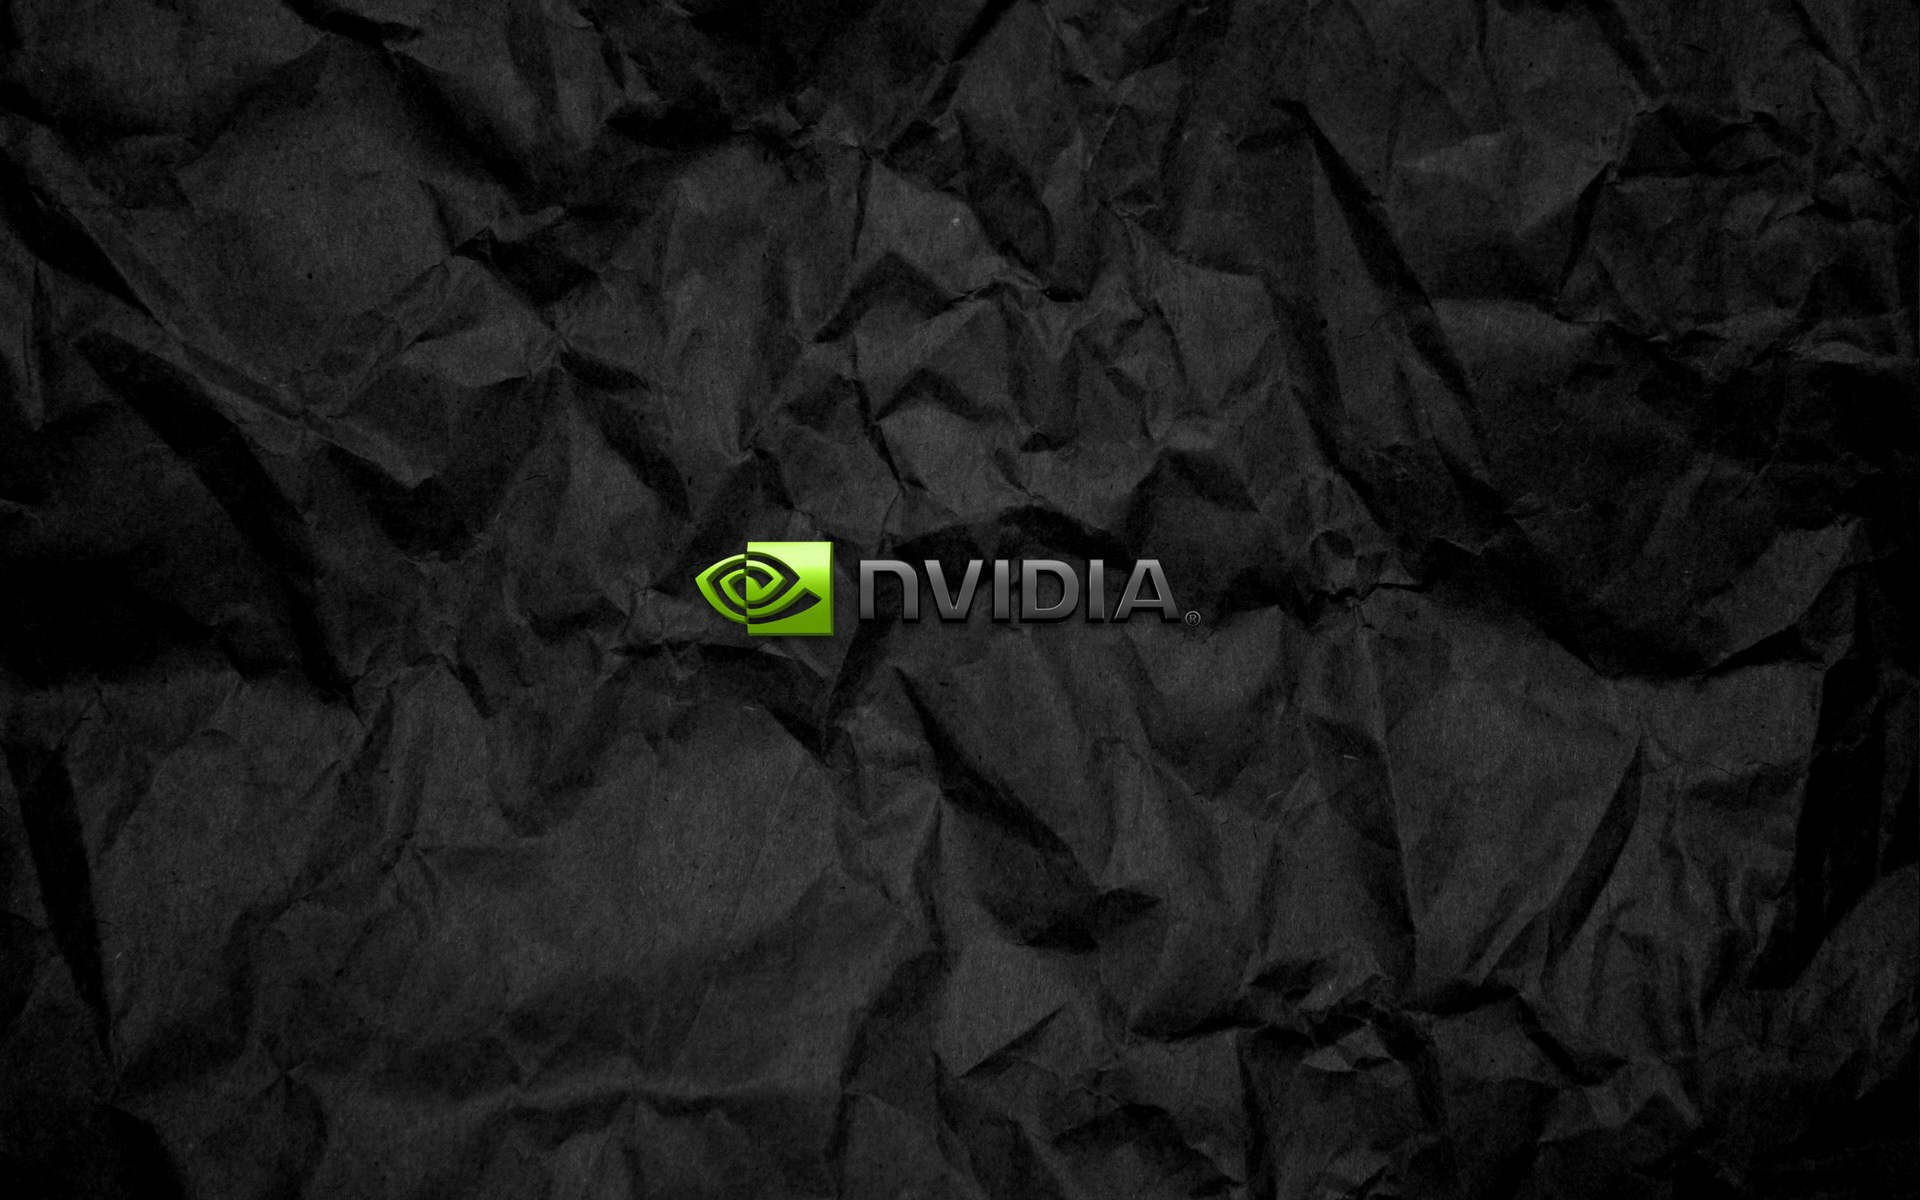 Symbolism Nvidia on crumpled black paper Desktop wallpaper 640x480